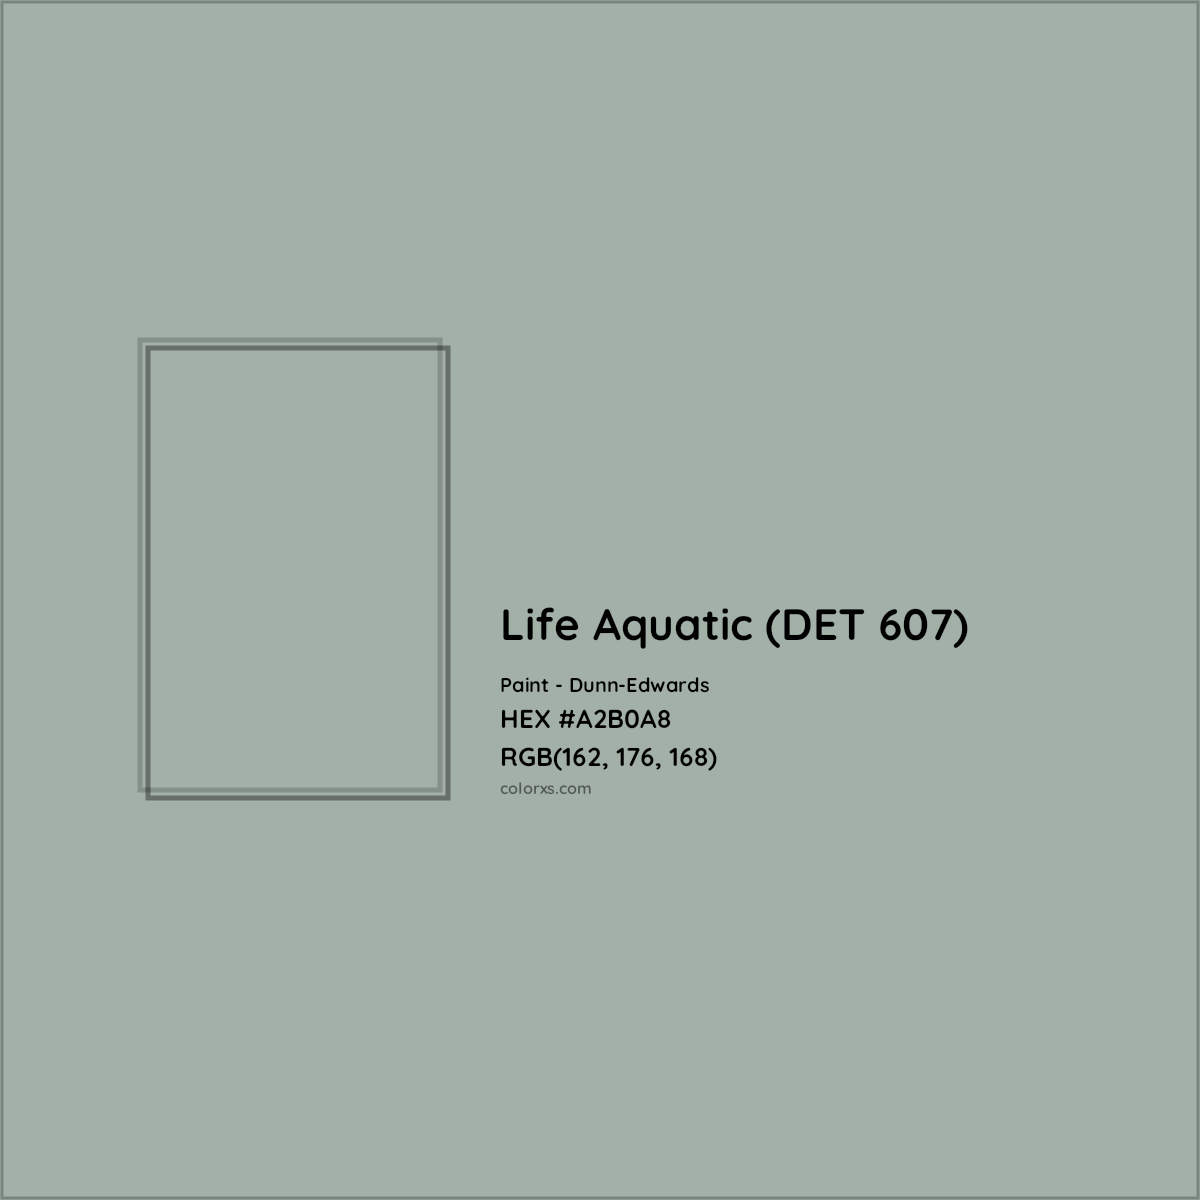 HEX #A2B0A8 Life Aquatic (DET 607) Paint Dunn-Edwards - Color Code